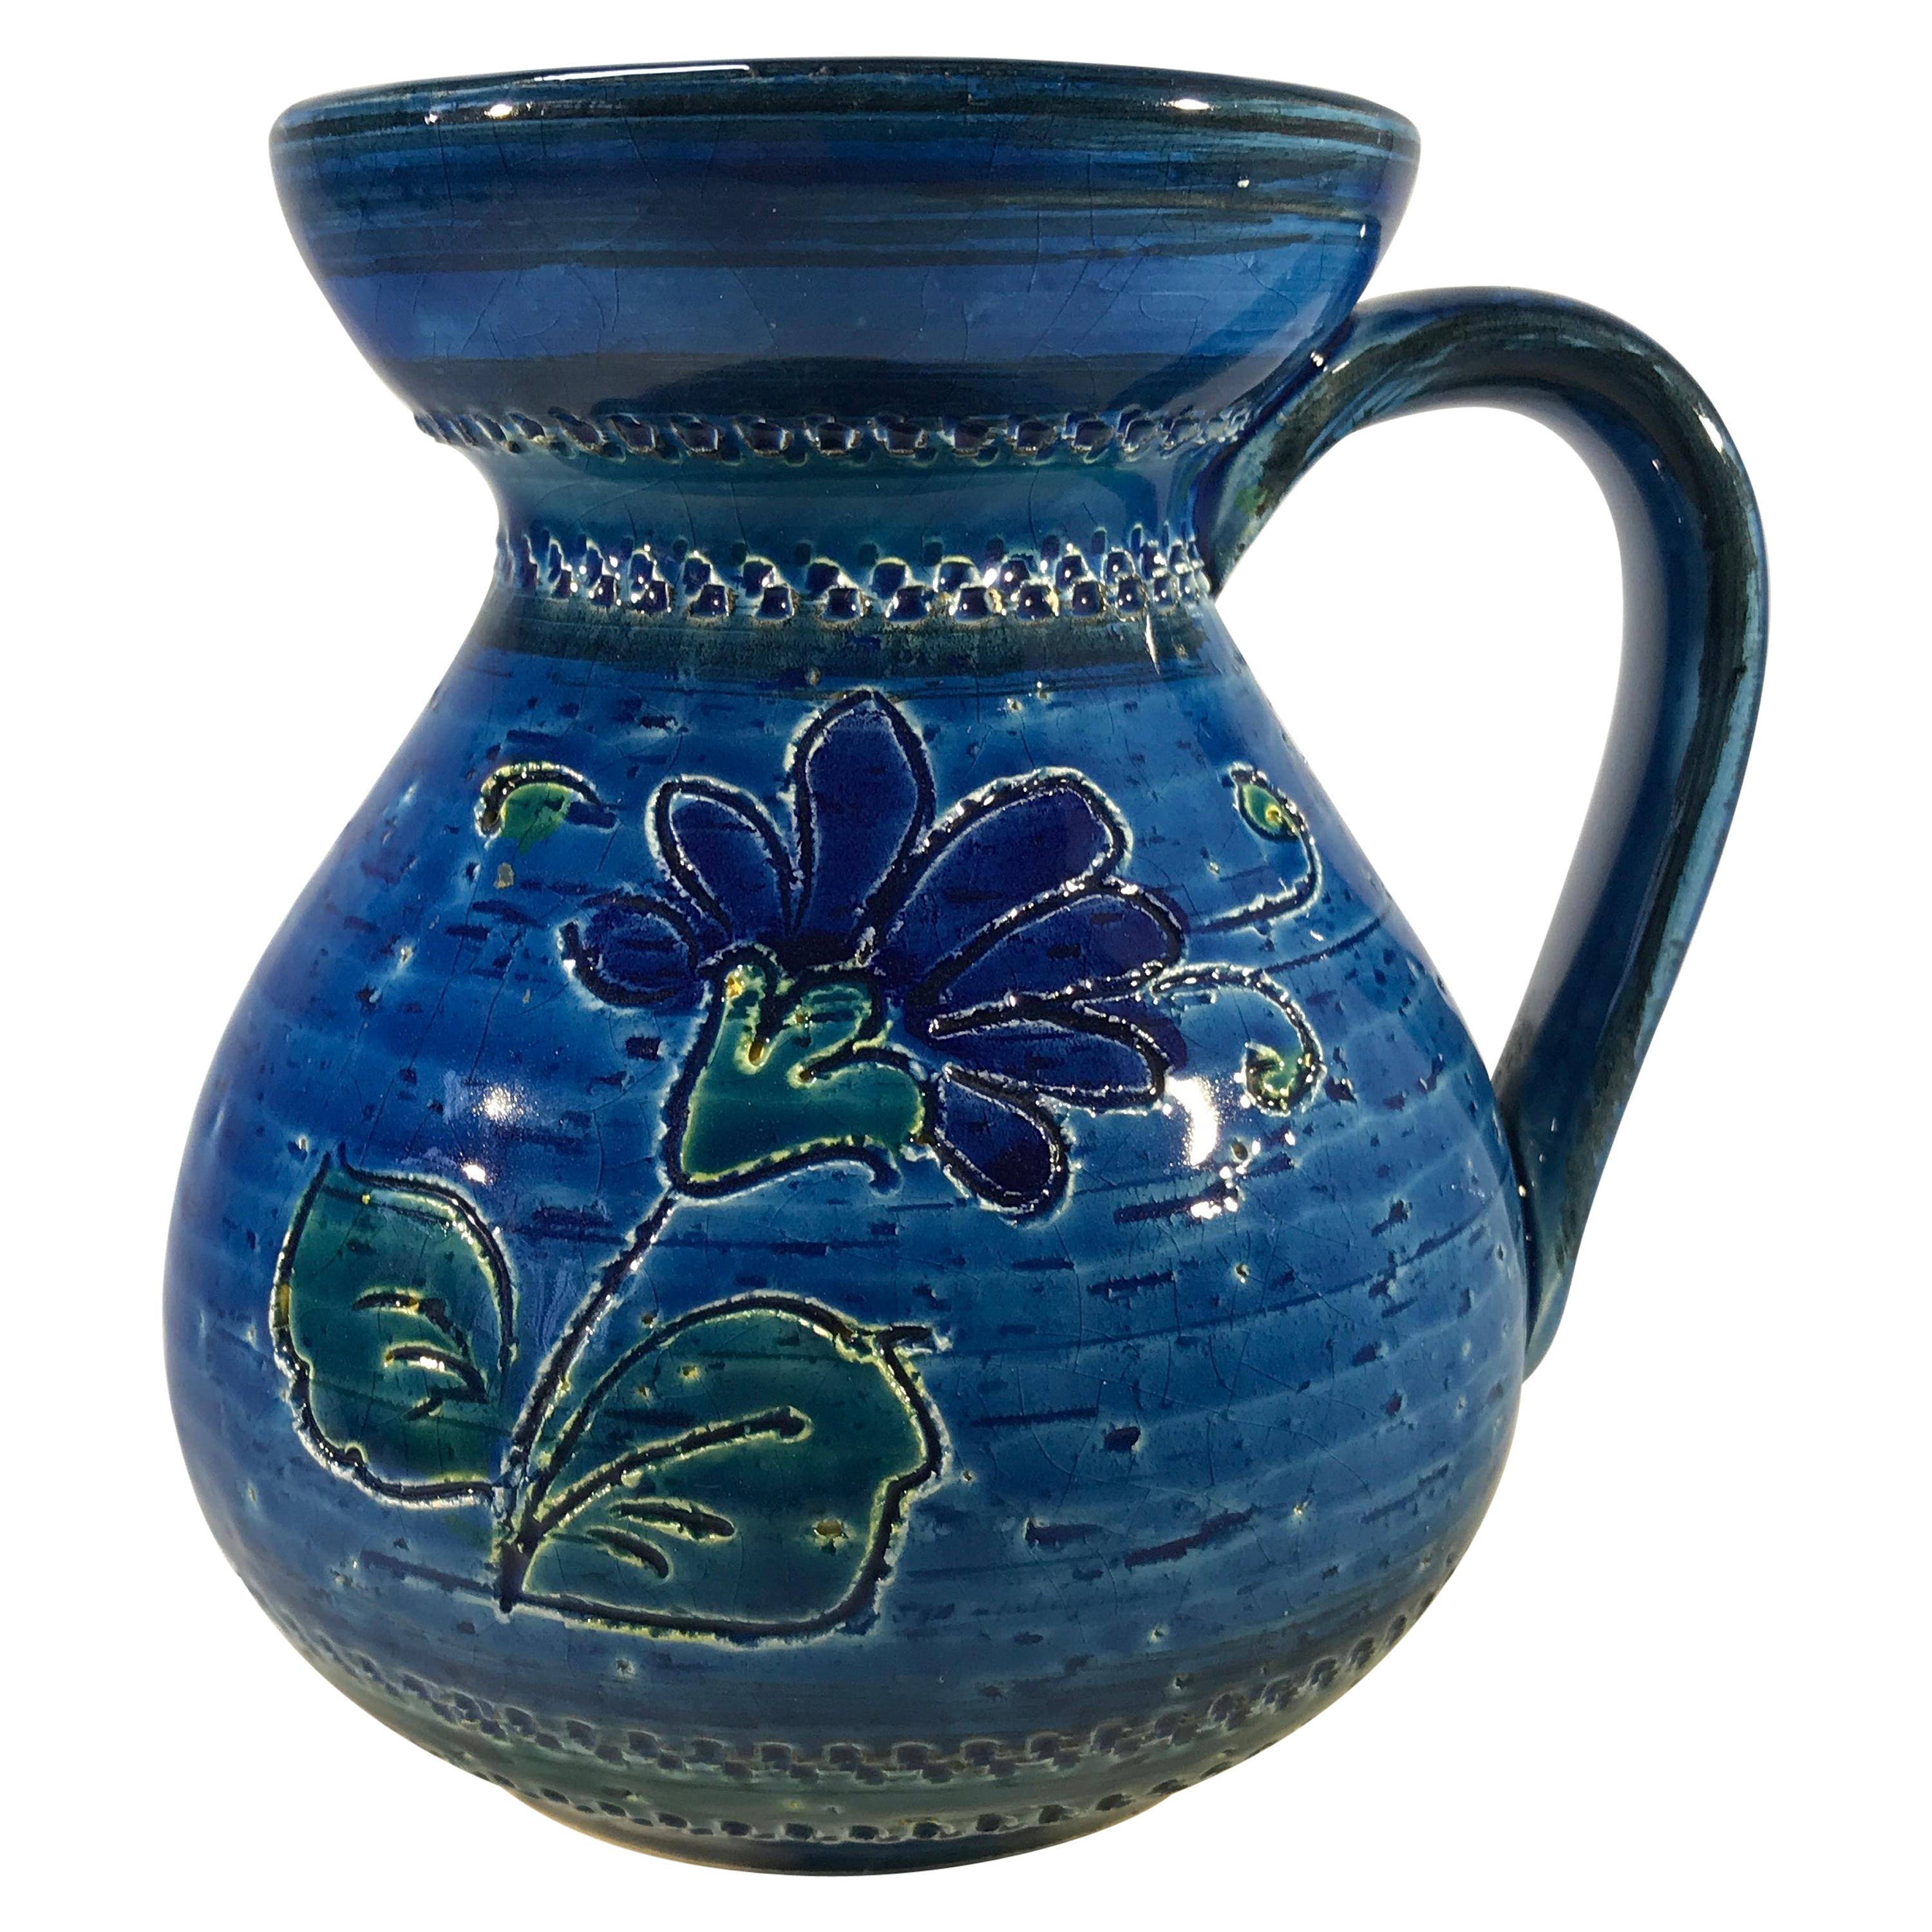 Aldo Londi Bitossi, Midcentury Rimini Blue Ceramic Candleholder Incised Floral